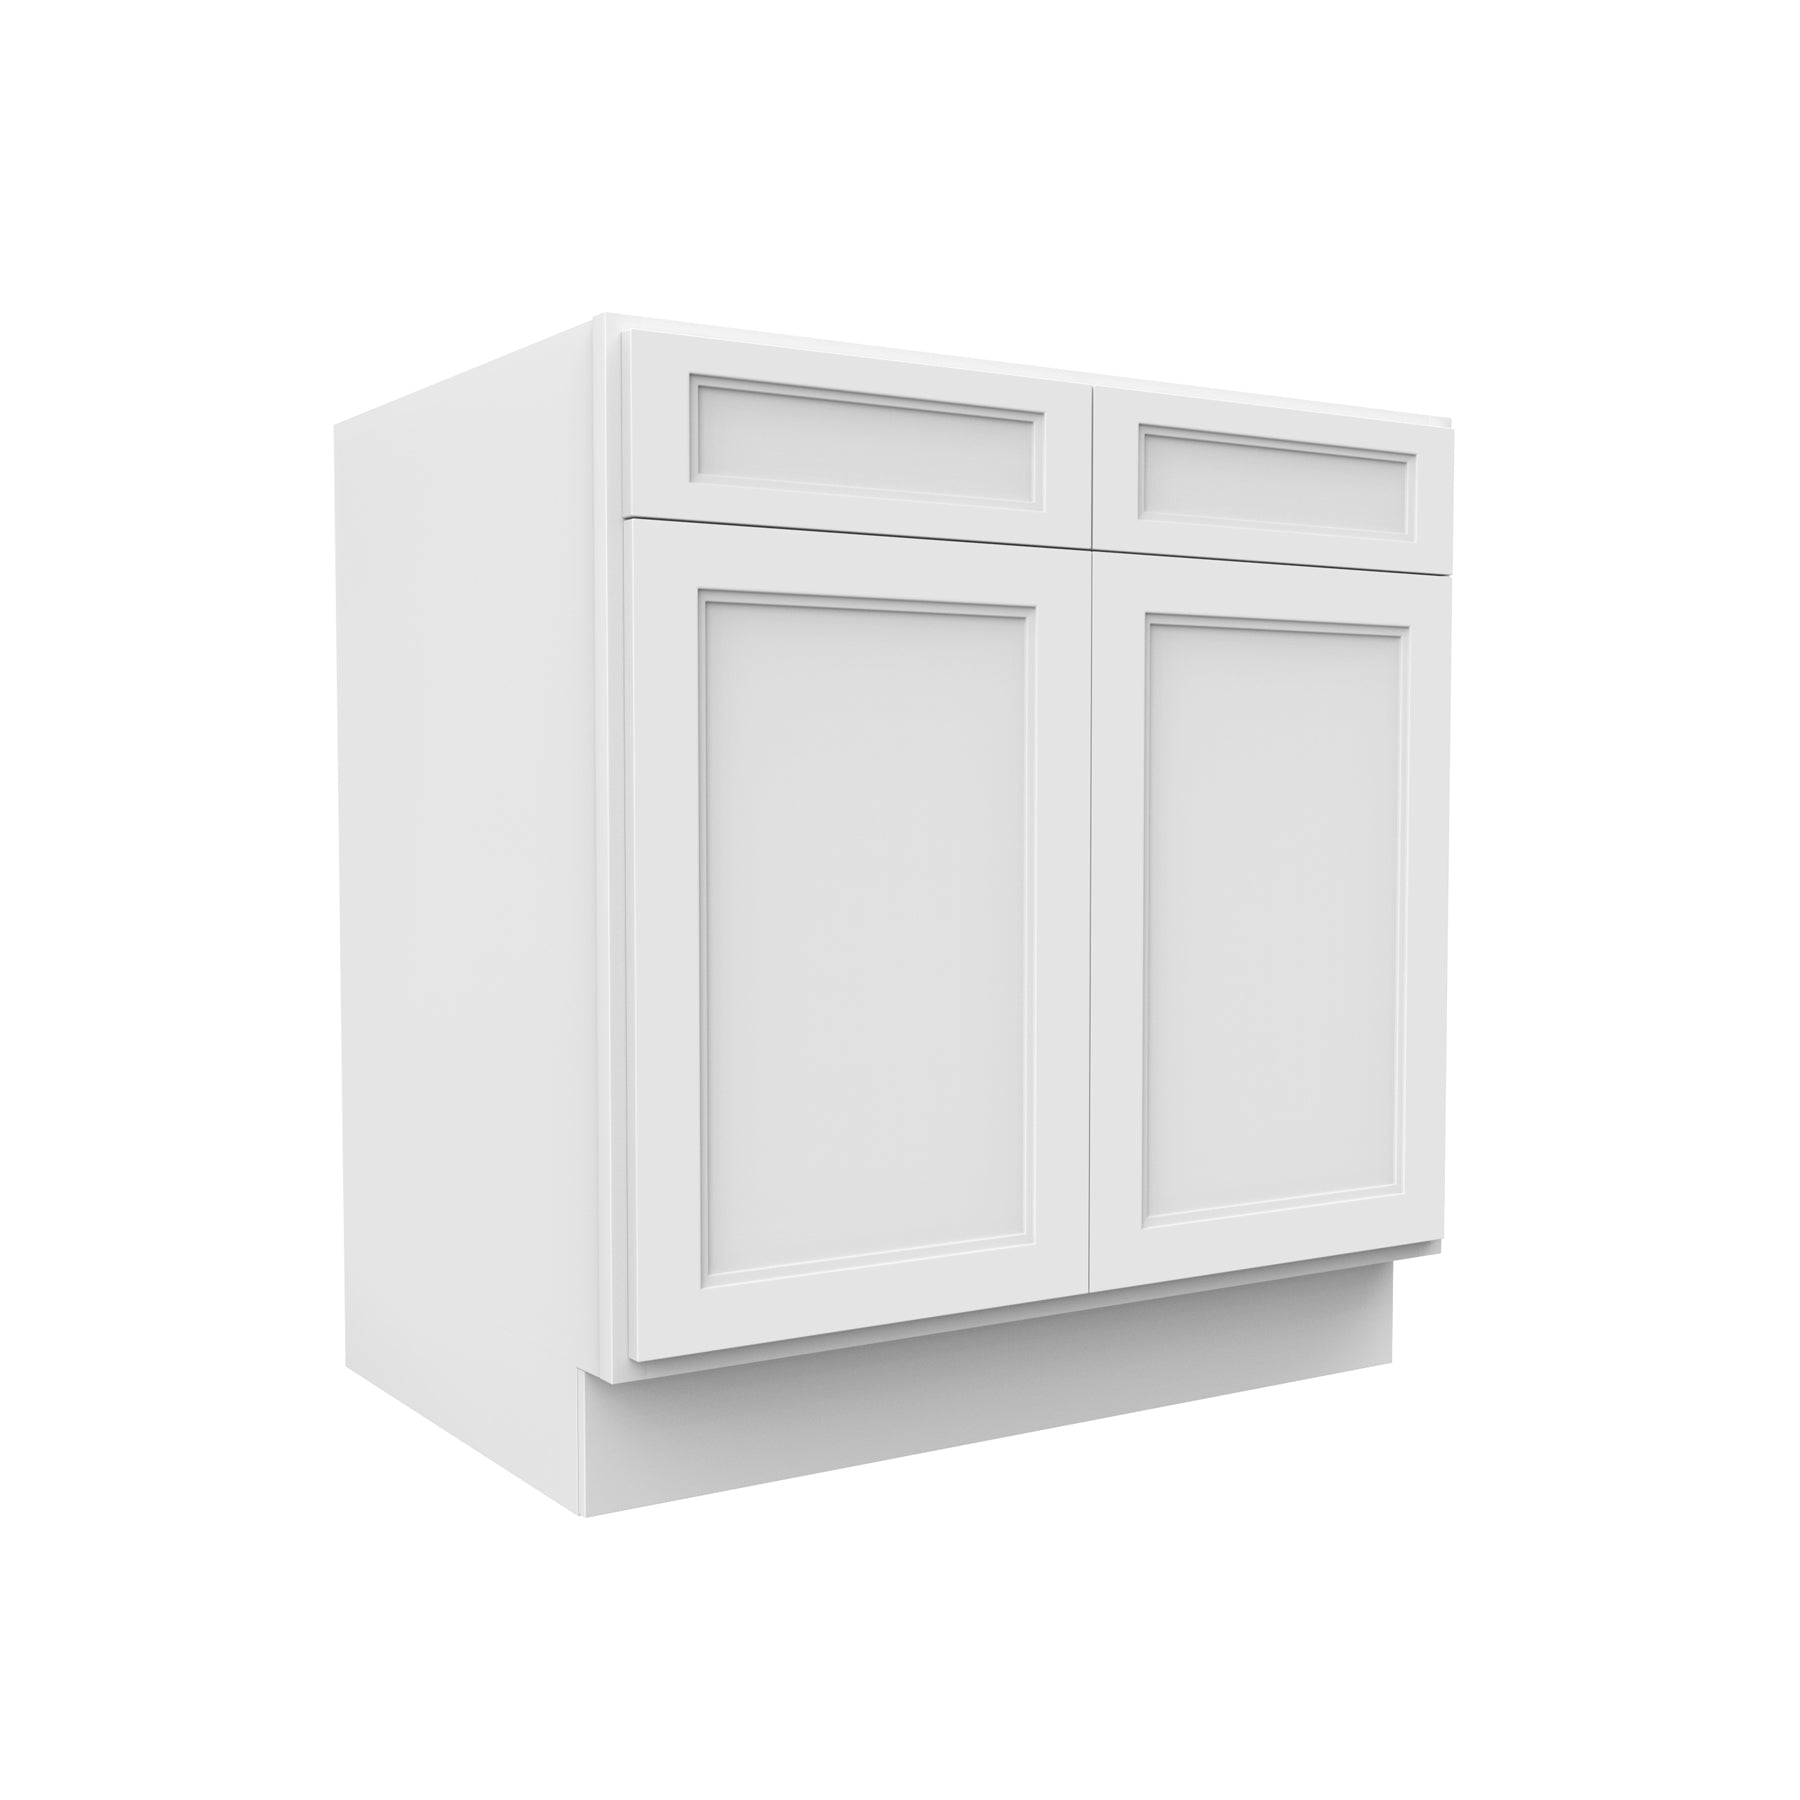 Fashion White - Sink Base Cabinet | 36"W x 34.5"H x 24"D